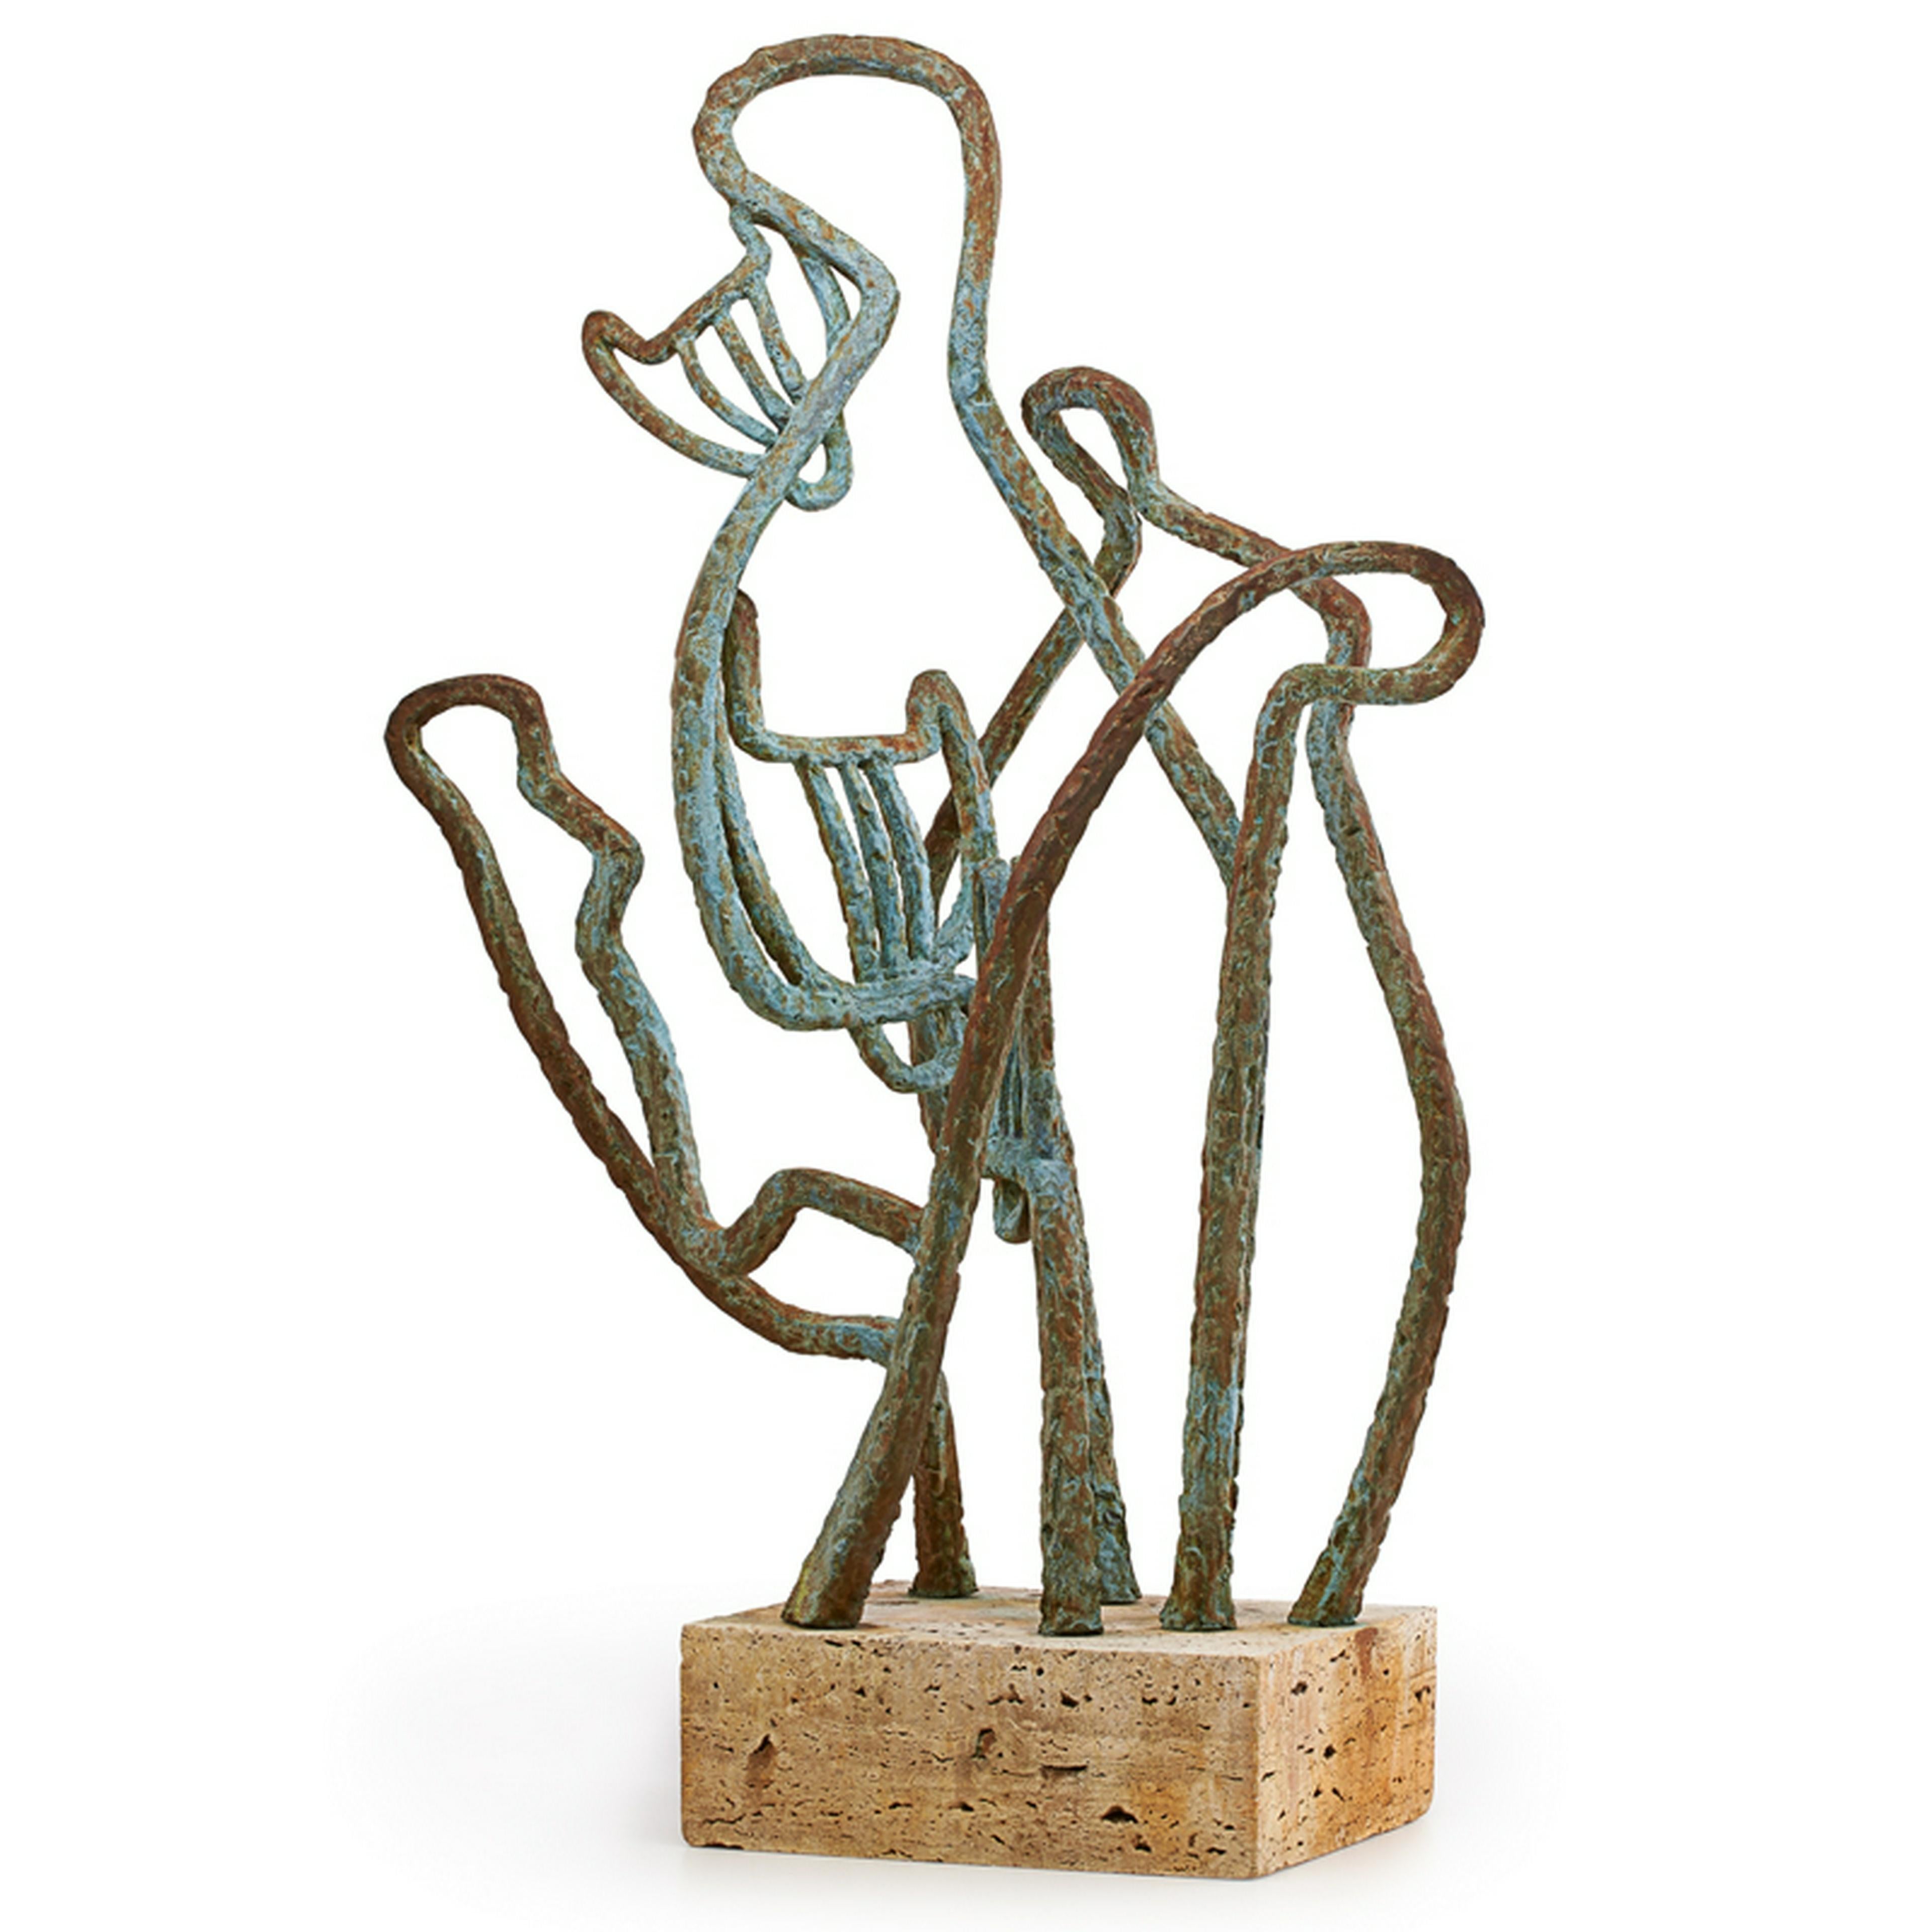 Marie Zoe Greene-Mercier Figurative Sculpture - Abstract Signed Cubist Bronze Sculpture "Cats" Chicago Bauhaus Woman Modernist  